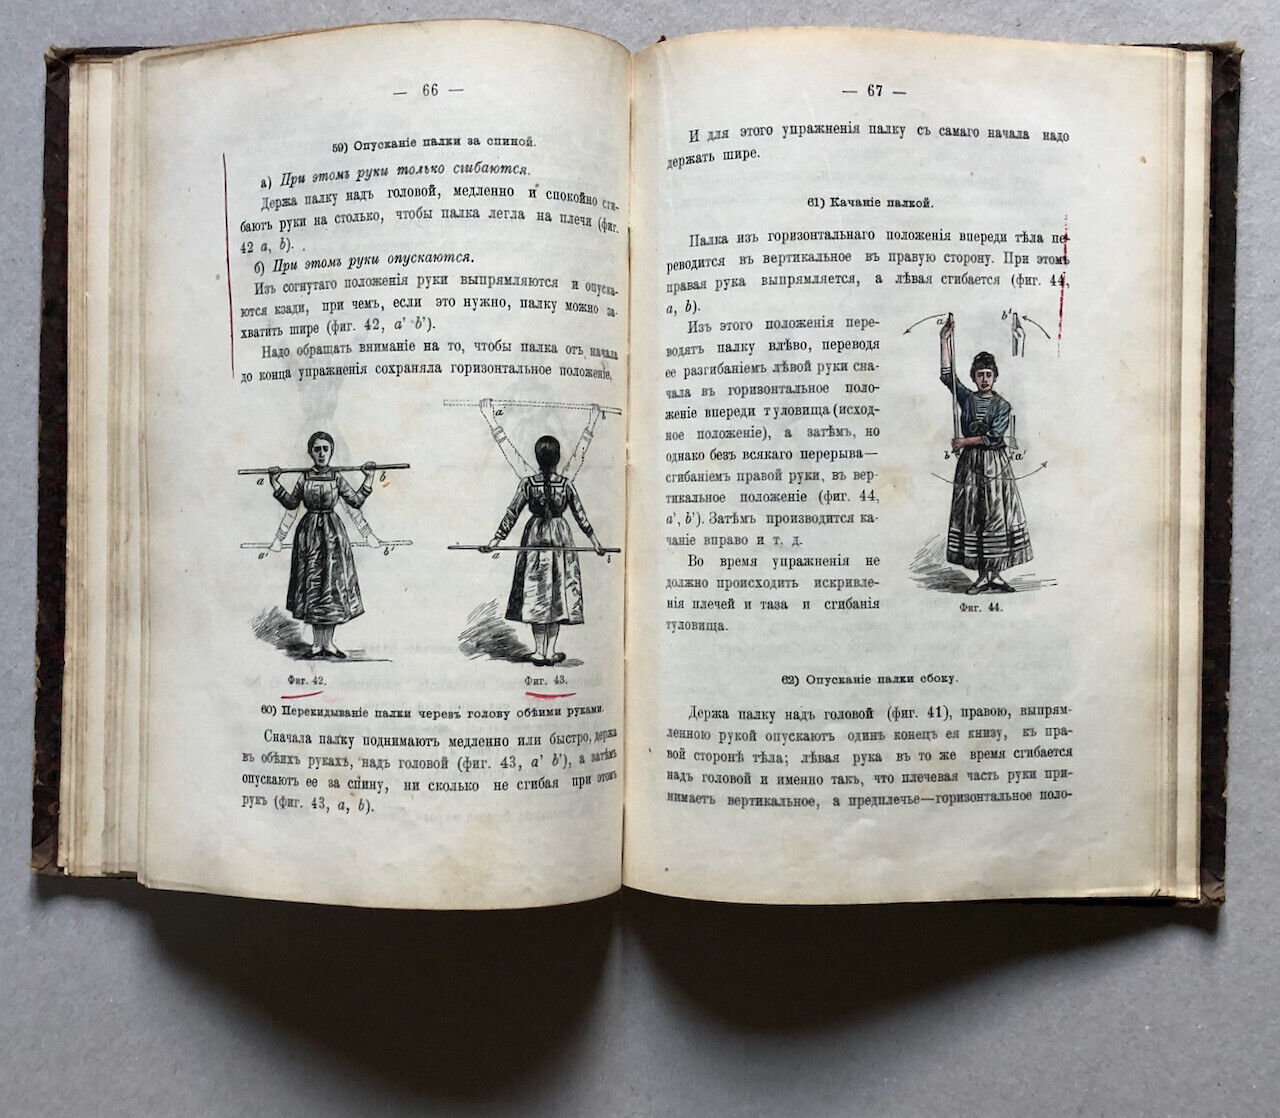 Angerstein & Eskler - manuel de gymnastique en russe — Saint-Petersbourg — 1888.